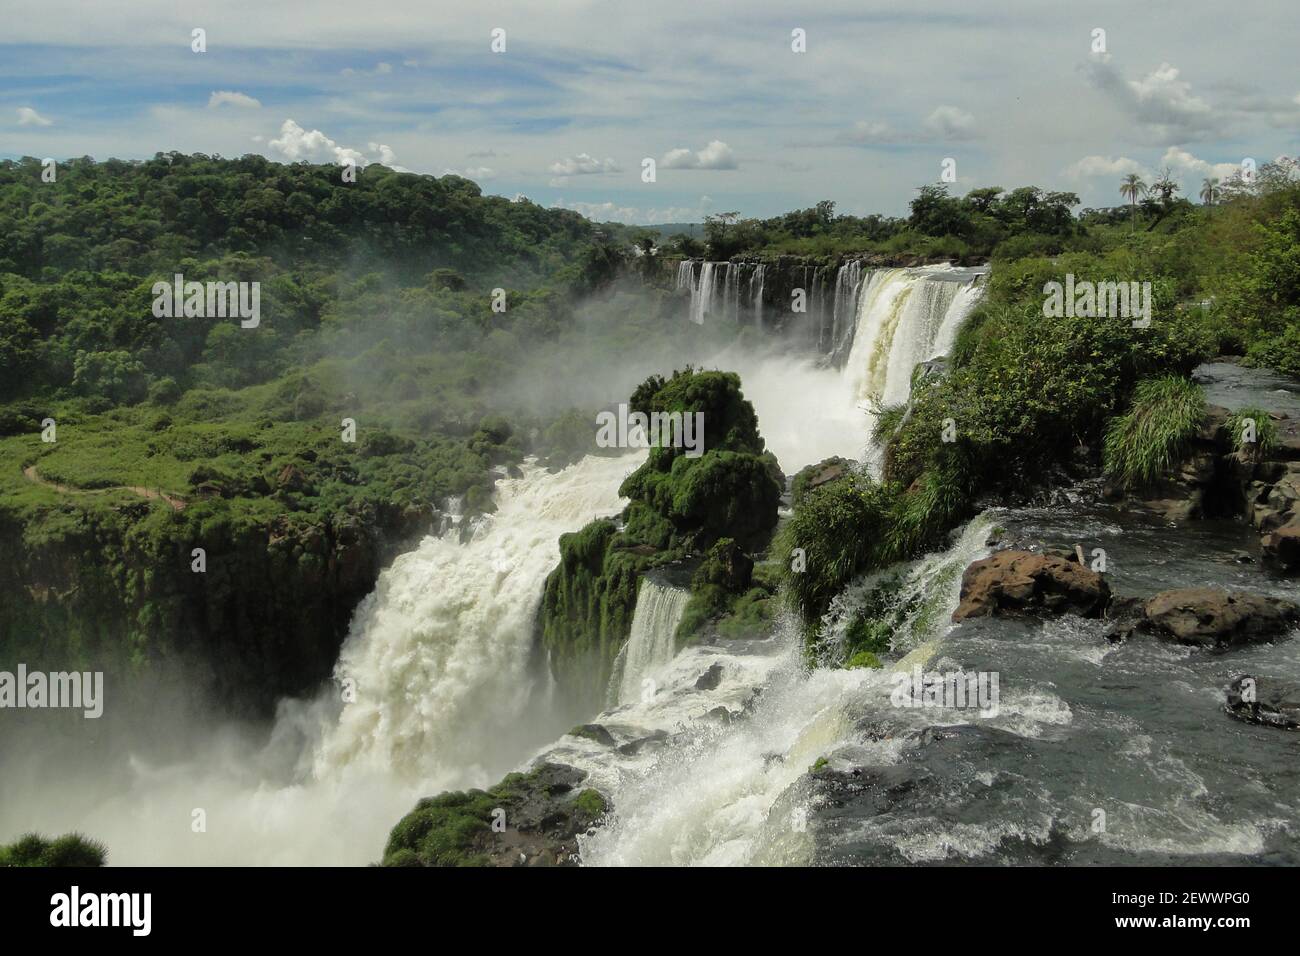 Chutes d'Iguazu, l'une des sept merveilles naturelles du monde Banque D'Images